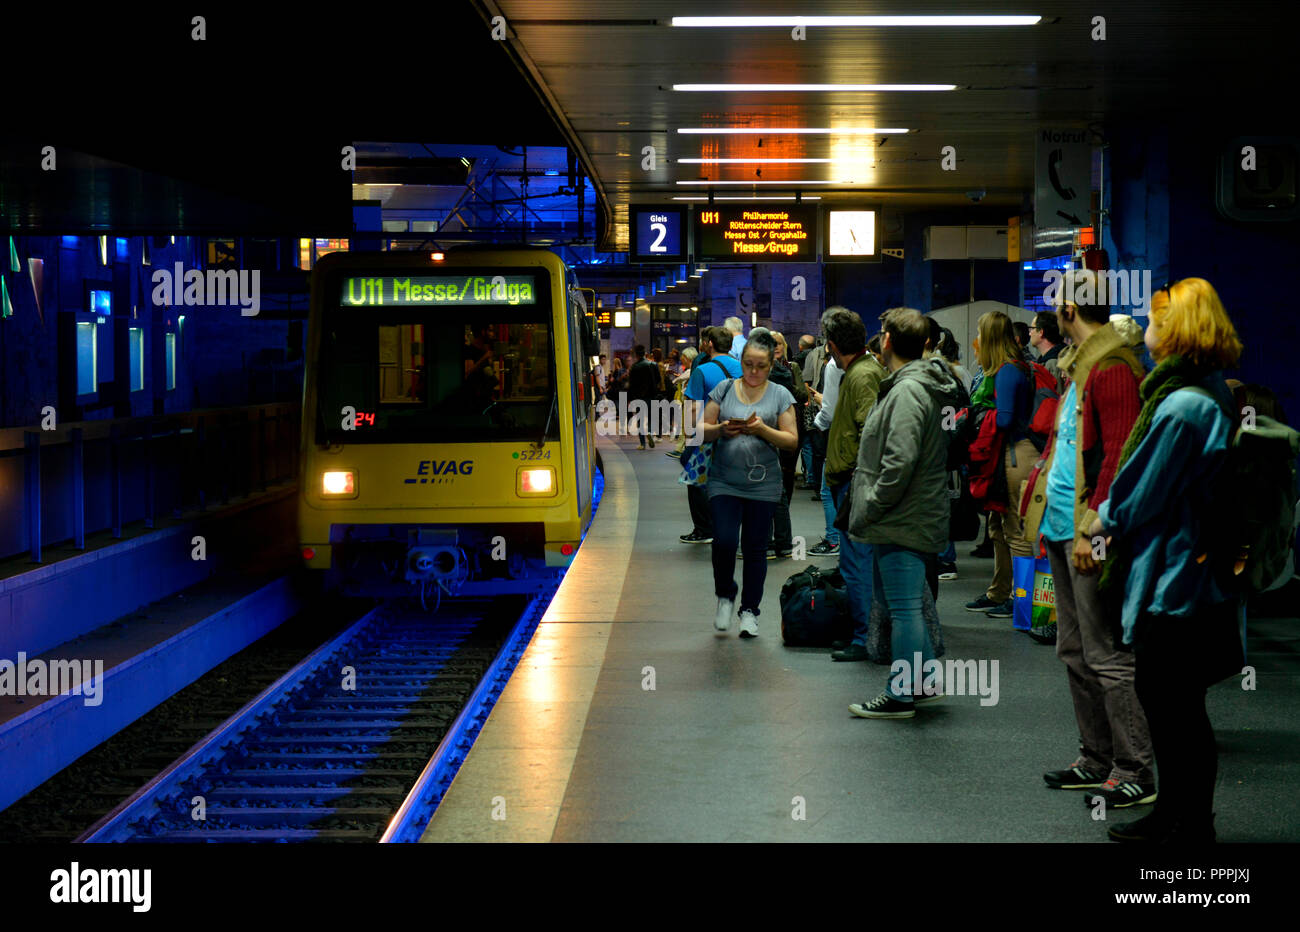 U-Bahnhof, Hauptbahnhof, Essen, Nordrhein-Westfalen, Deutschland Stock Photo